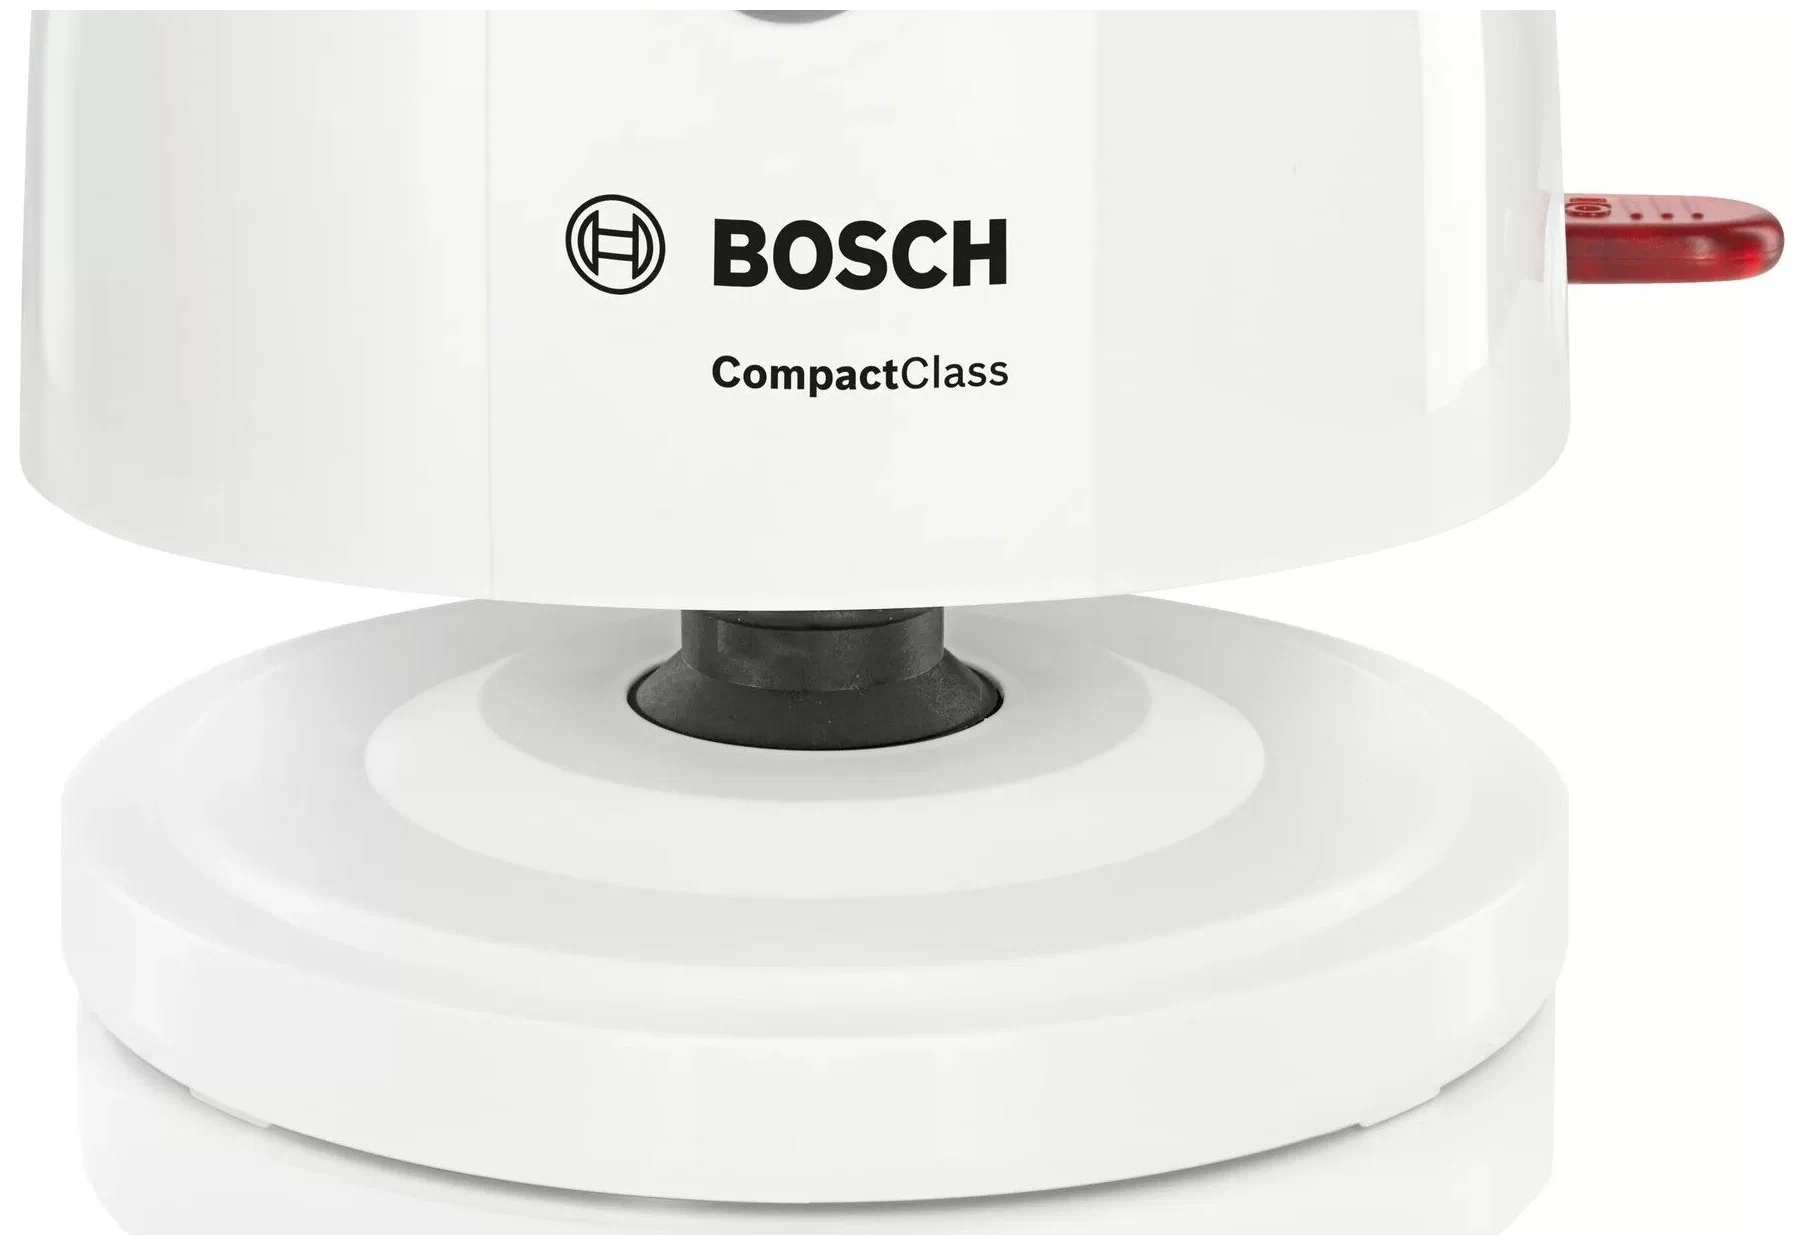 Bosch TWK 3A051 - особенности: вращение на 360 градусов, индикатор уровня воды, фильтр, отсек для хранения шнура